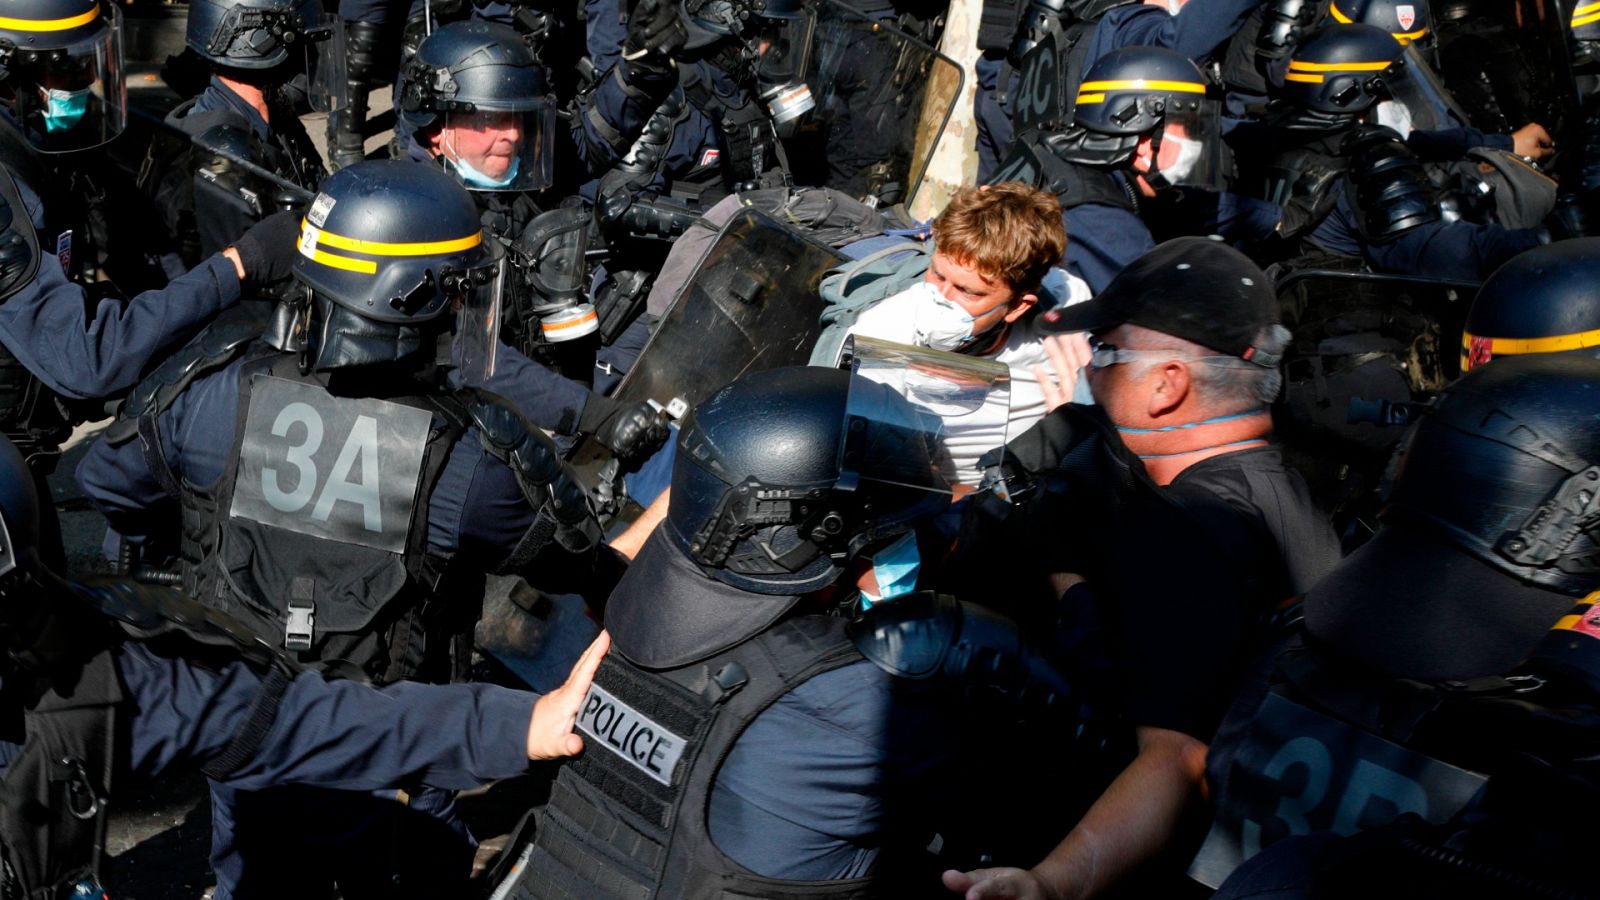 Varios agentes detienen a uno de los manifestantes durante una protesta de los 'chalecos amarillos' en París.